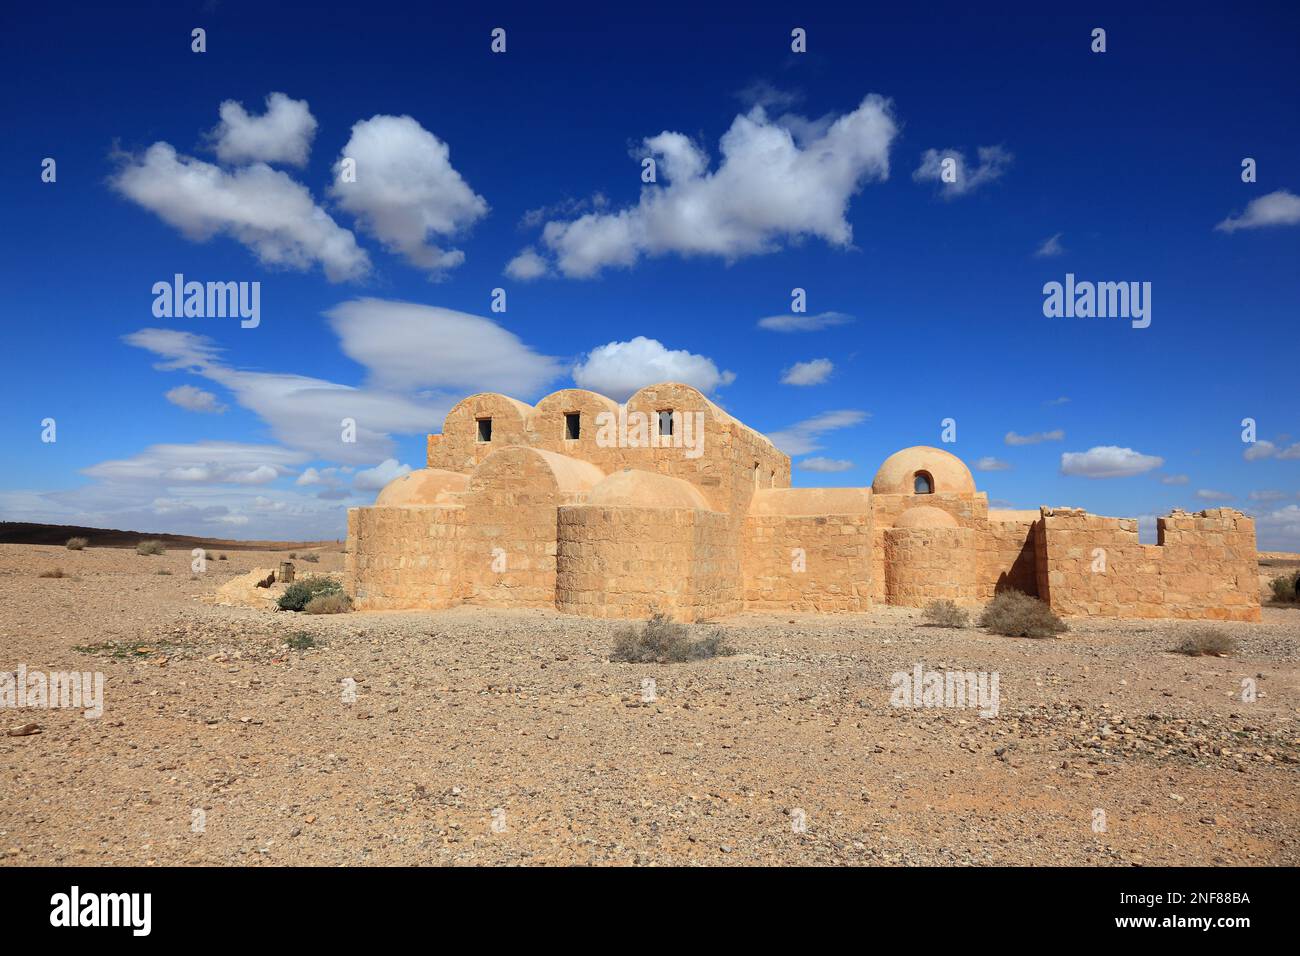 Qusair Amra, Qusayr Amra, Kleiner Palast von Amra, Unesco Weltkulturerbe, Wüstenschloß östlich von Amman, Jordanien  /  Qasr Amra, also transcribed Qu Stock Photo